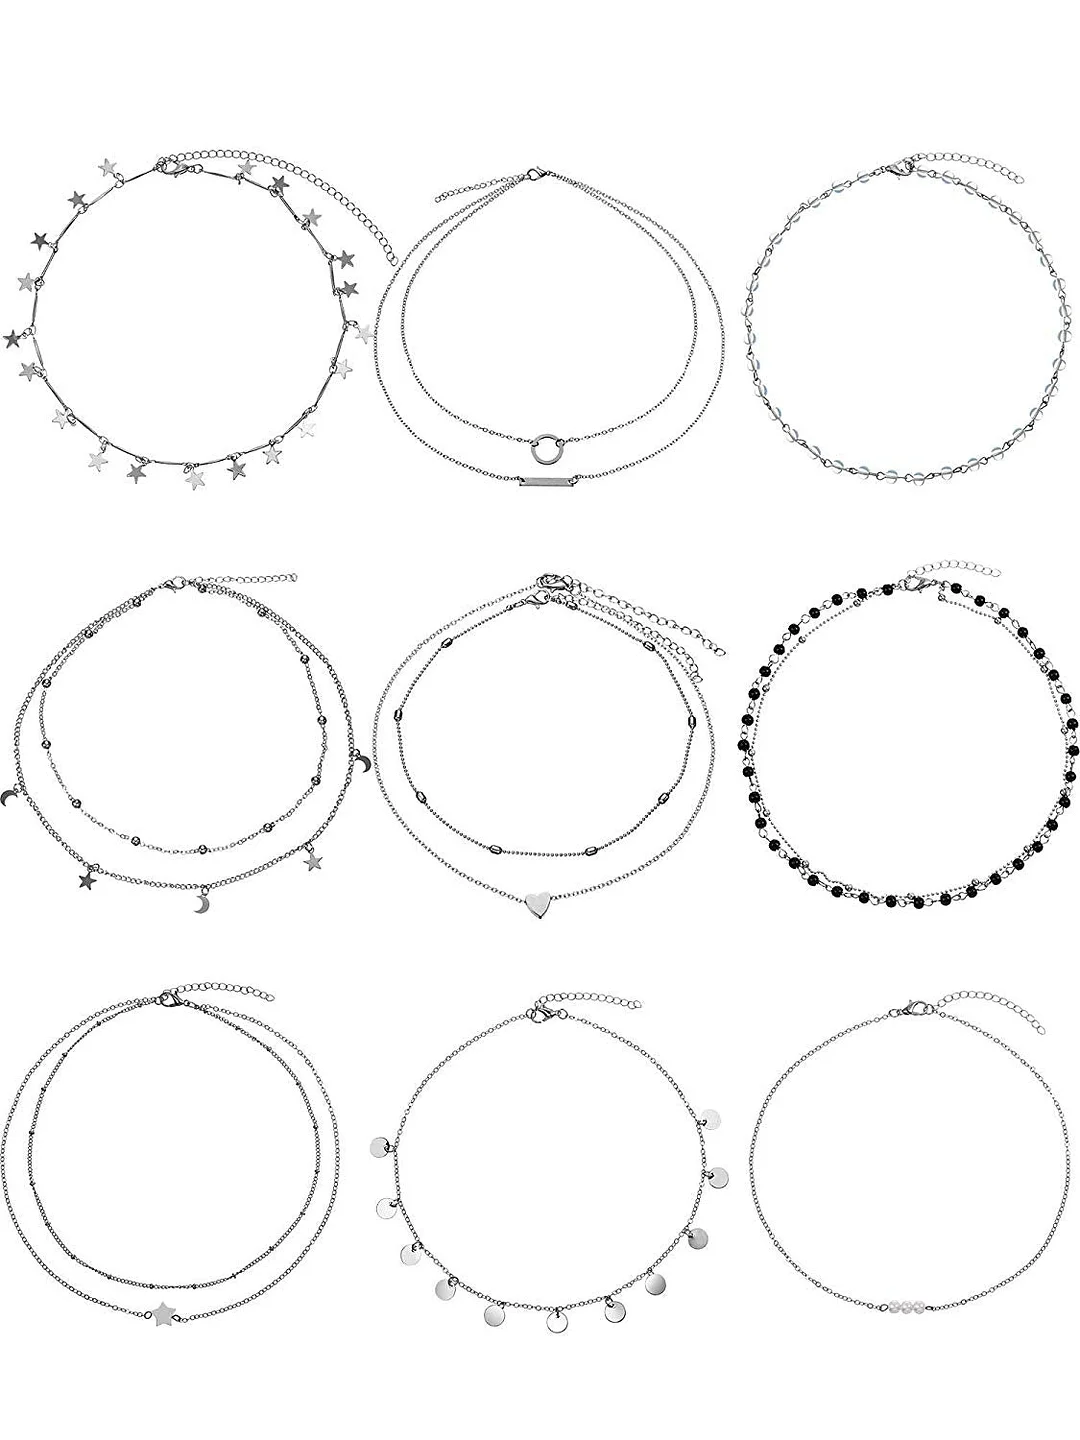 9 Pieces Women Girls Layered Choker Necklace Sliver Layered Pendant Choker Jewelry Set (Style 1)